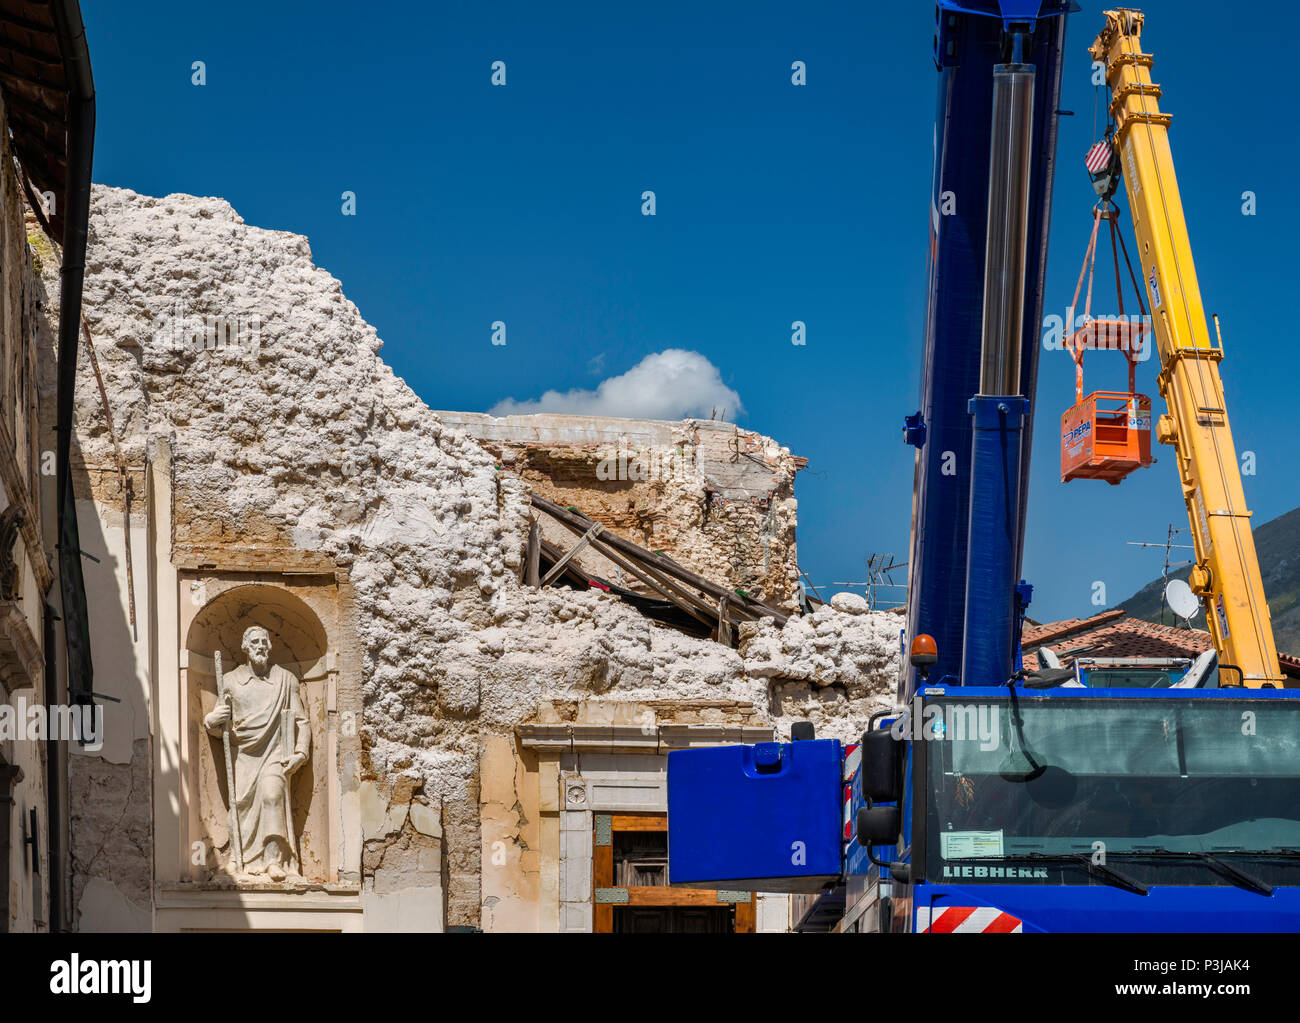 Statua, intatto, presso le rovine della chiesa, distrutta dai terremoti in ottobre 2016, Aprile 2018 vista, a Norcia in Umbria, Italia Foto Stock